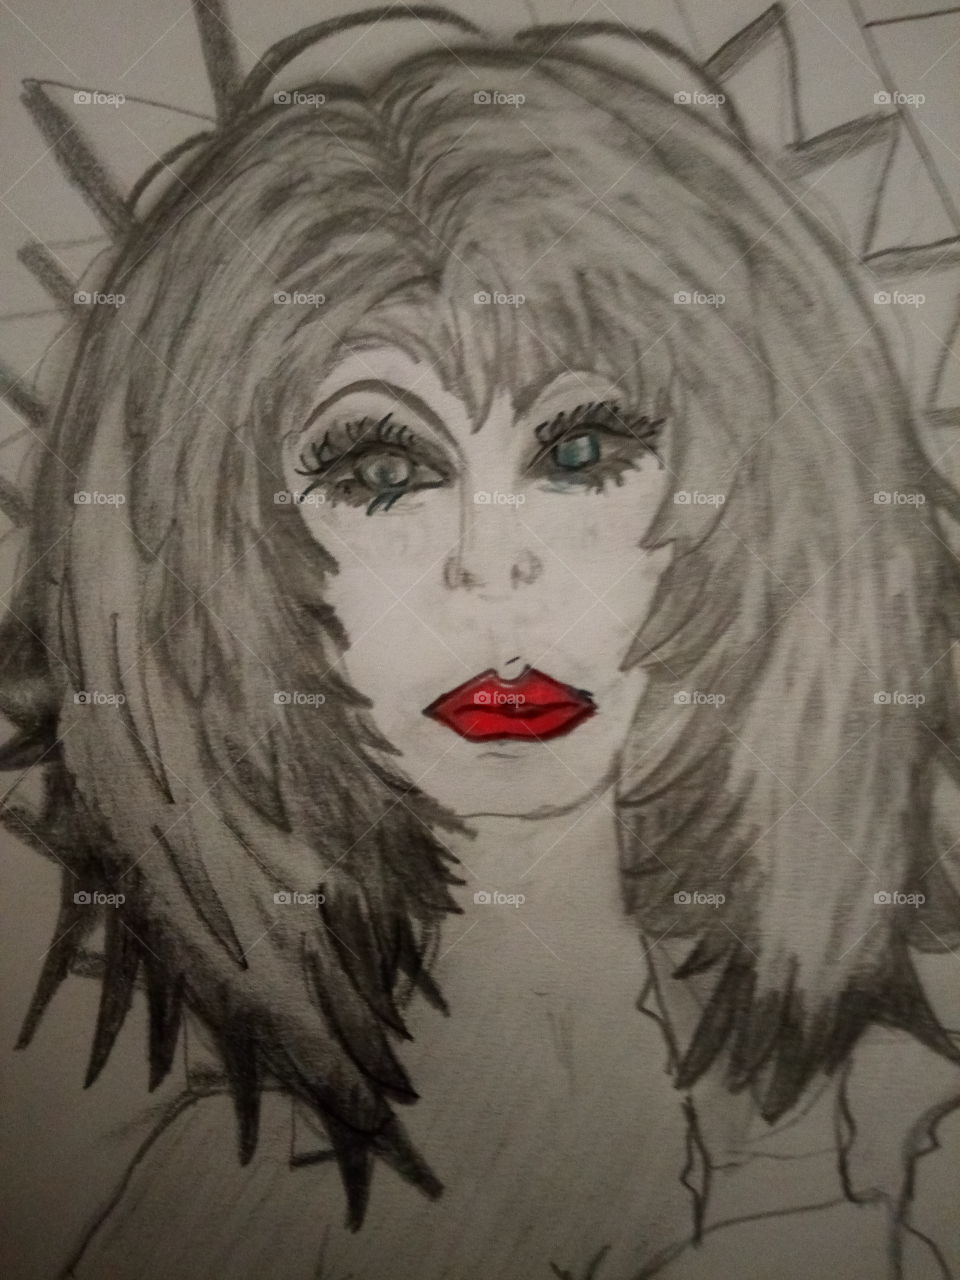 von mir gemalt,starrer Blick ,kein Selbstporträt,Frau mit rotem Mund , Bleistift Zeichnung